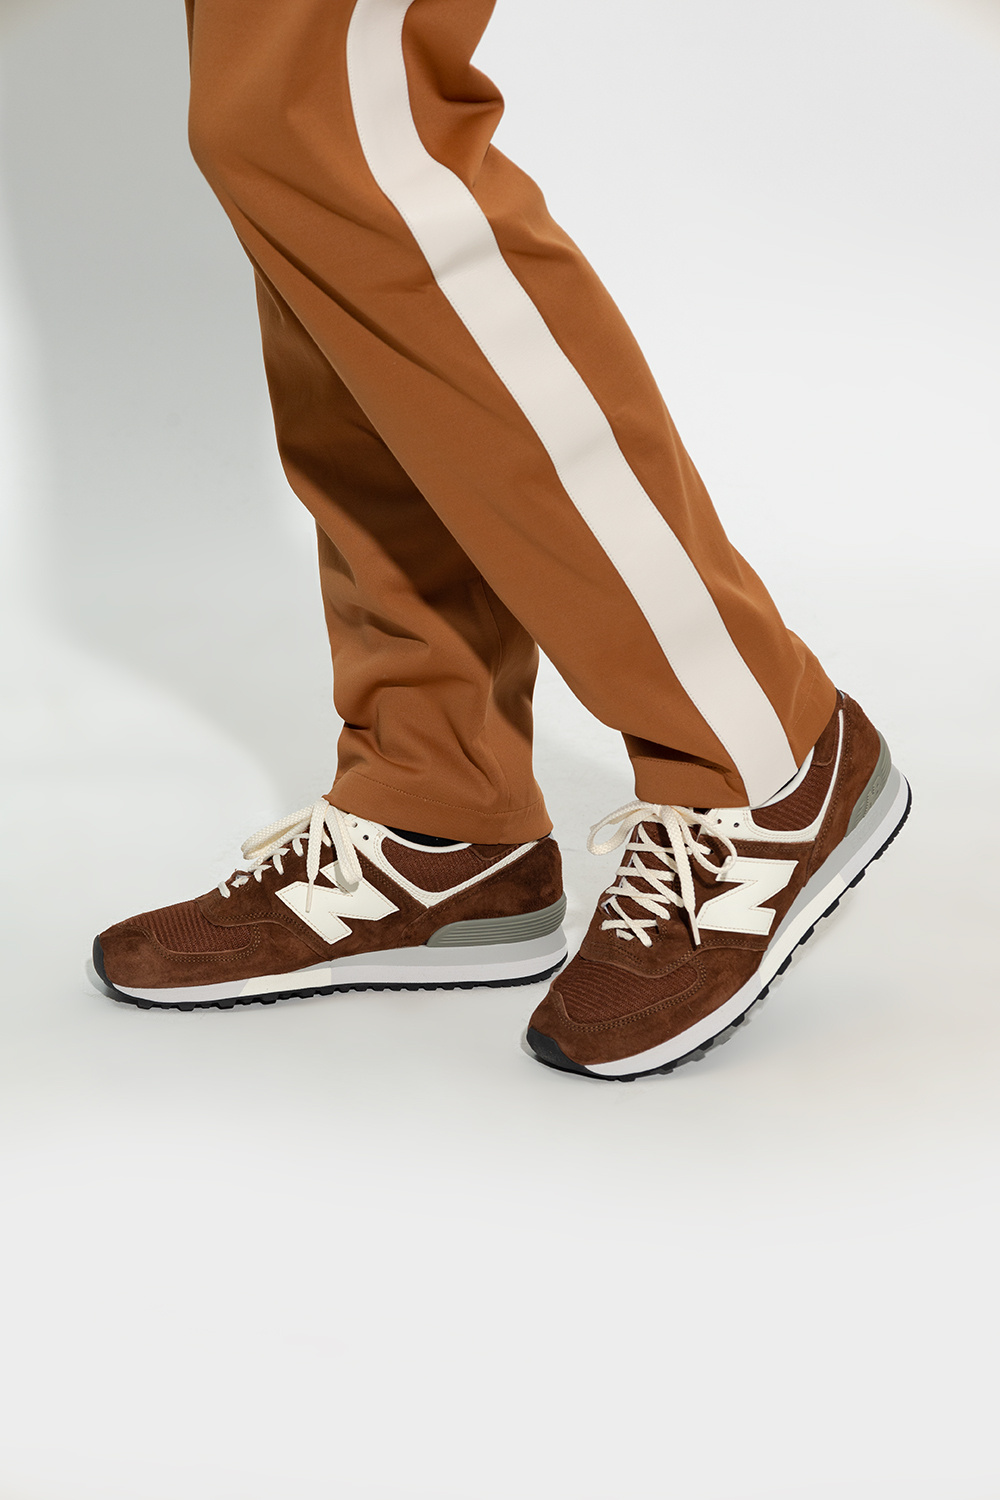 New Balance 'OU576BRN' sneakers | Men's Shoes | Vitkac